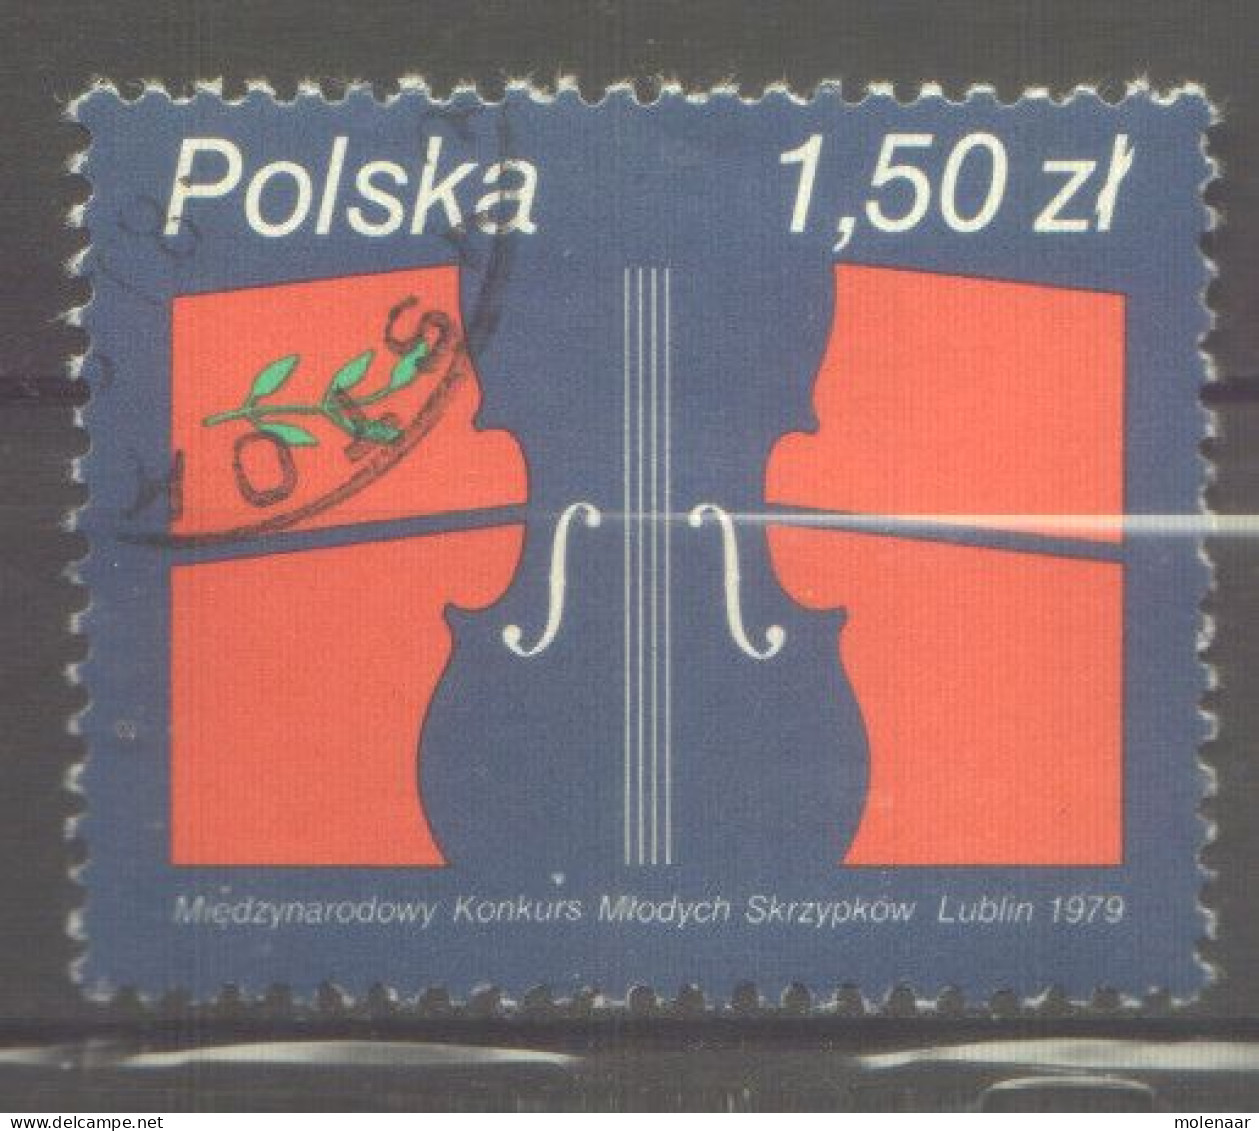 Postzegels > Europa > Polen > 1944-.... Republiek > 1971-80 > Gebruikt  2643 (12174) - Gebruikt